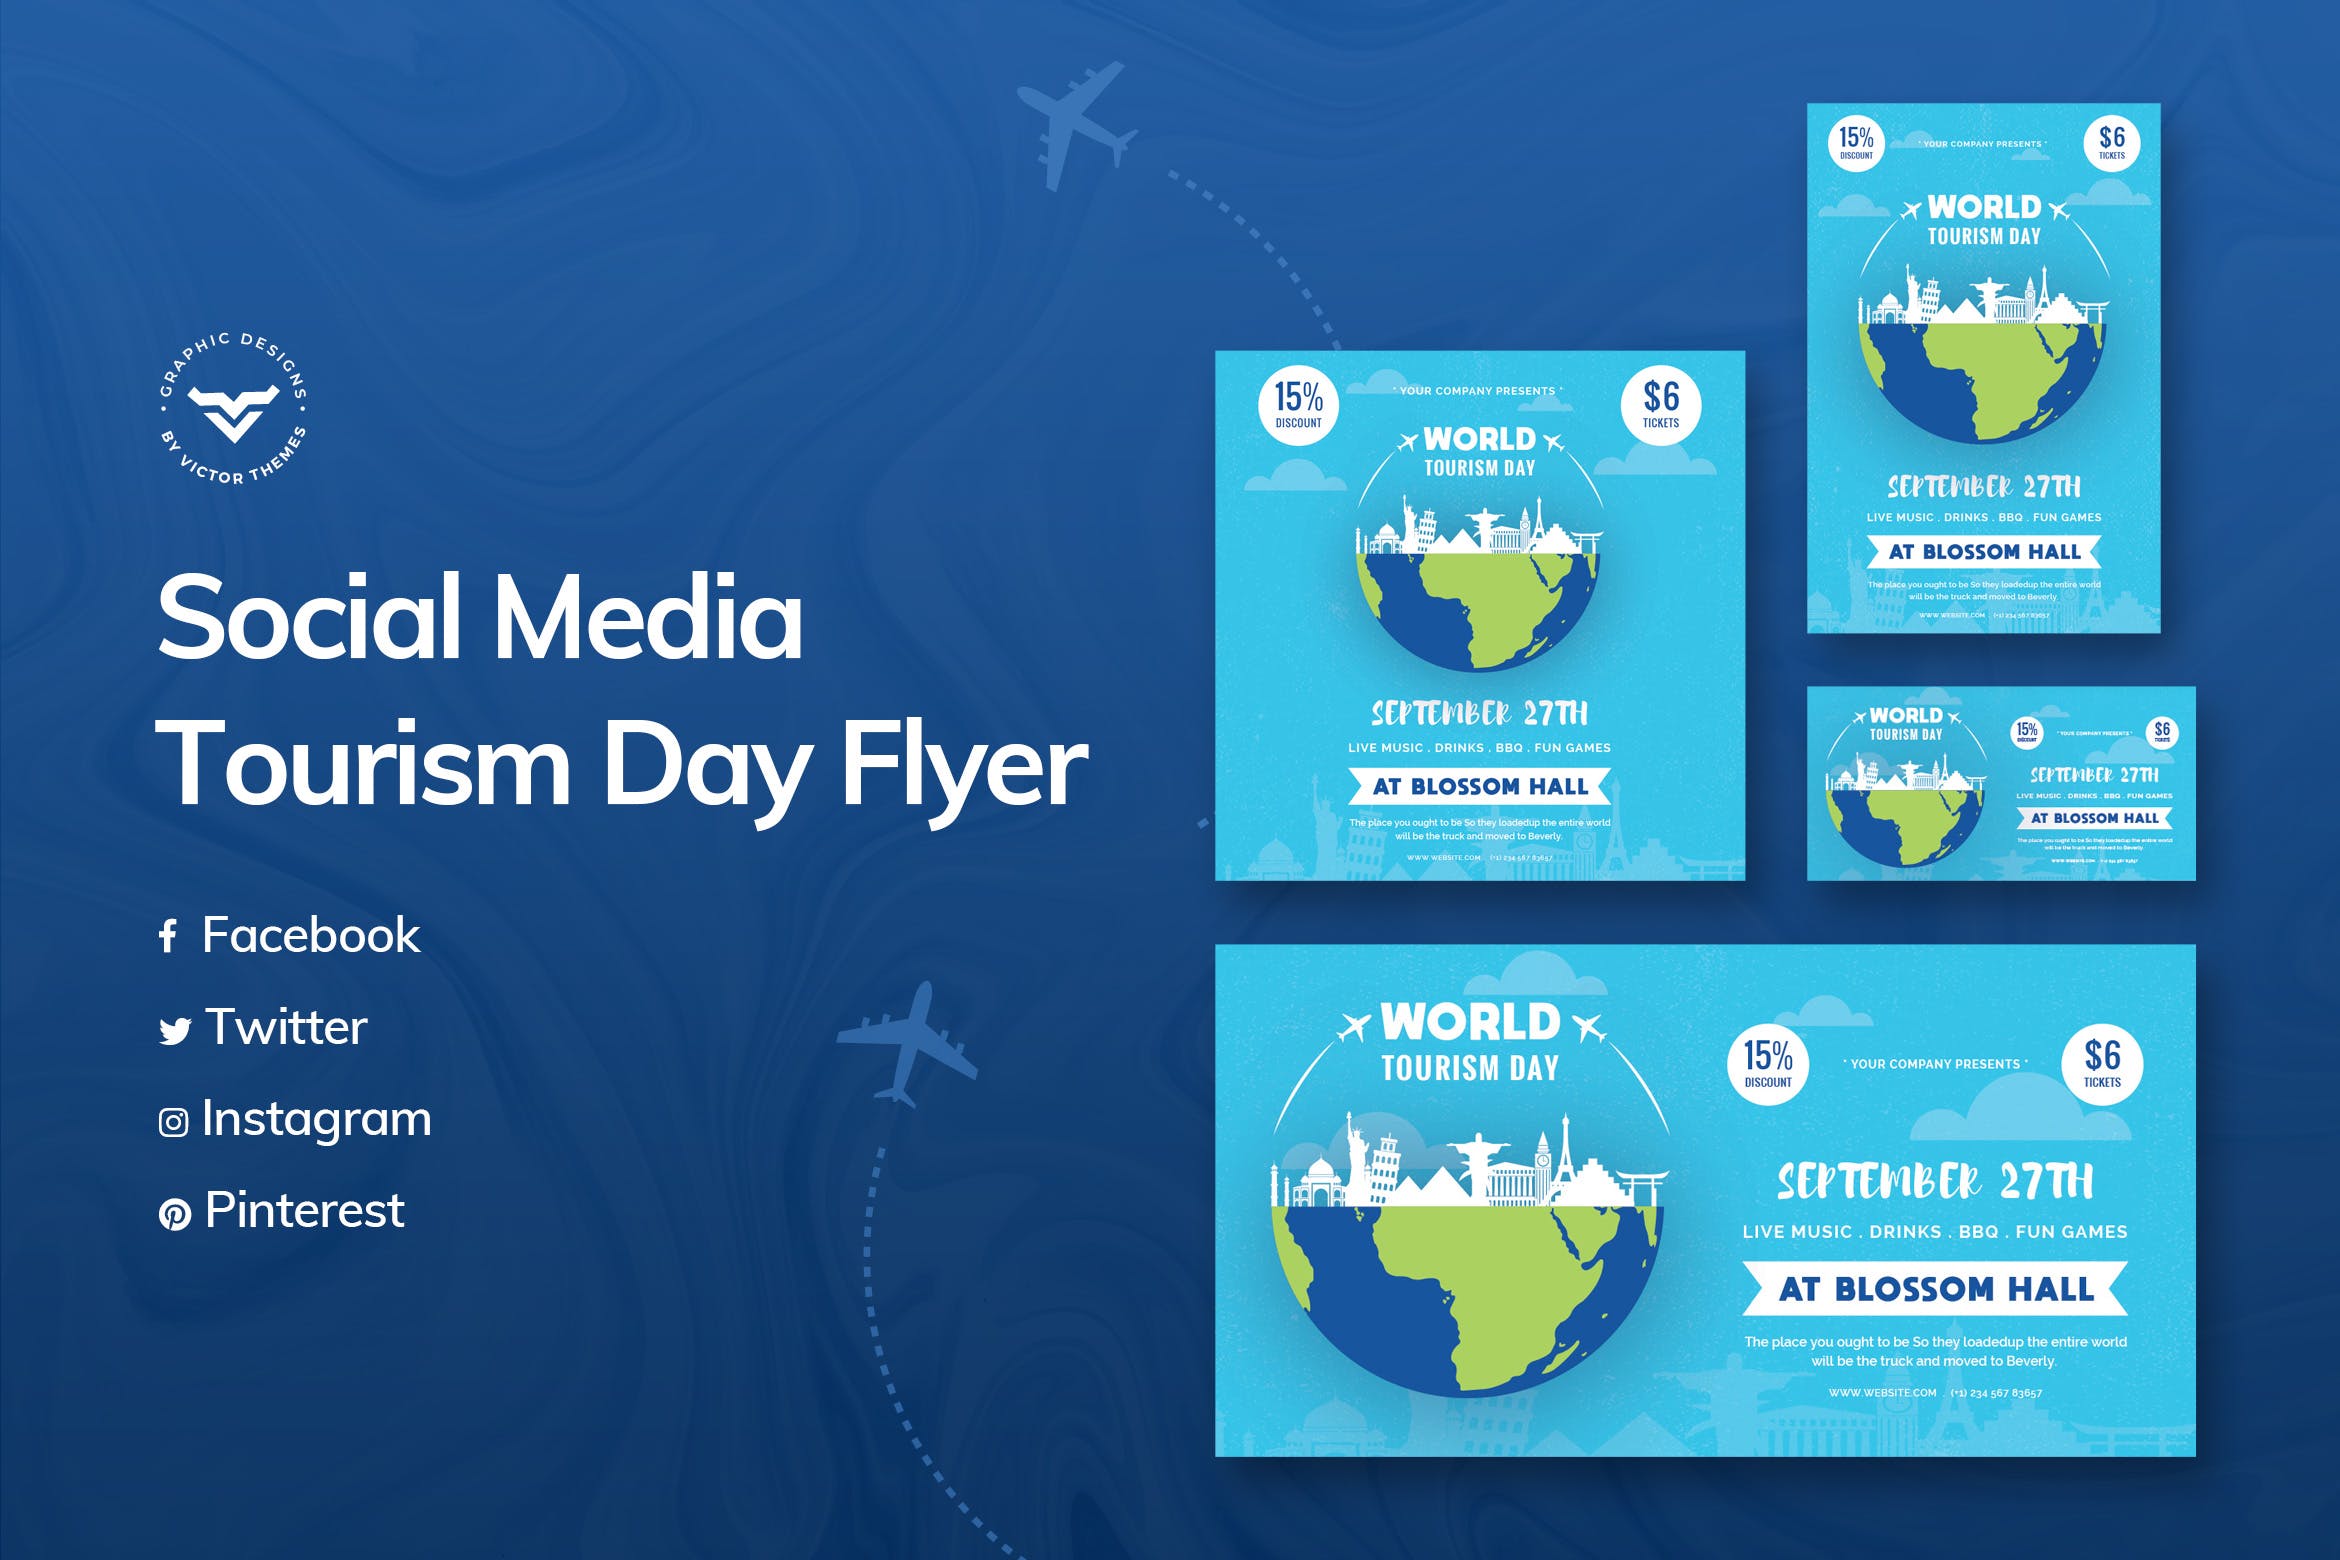 世界旅游日主题推广社交媒体设计模板第一素材精选 World Tourism Day Social Media Template插图